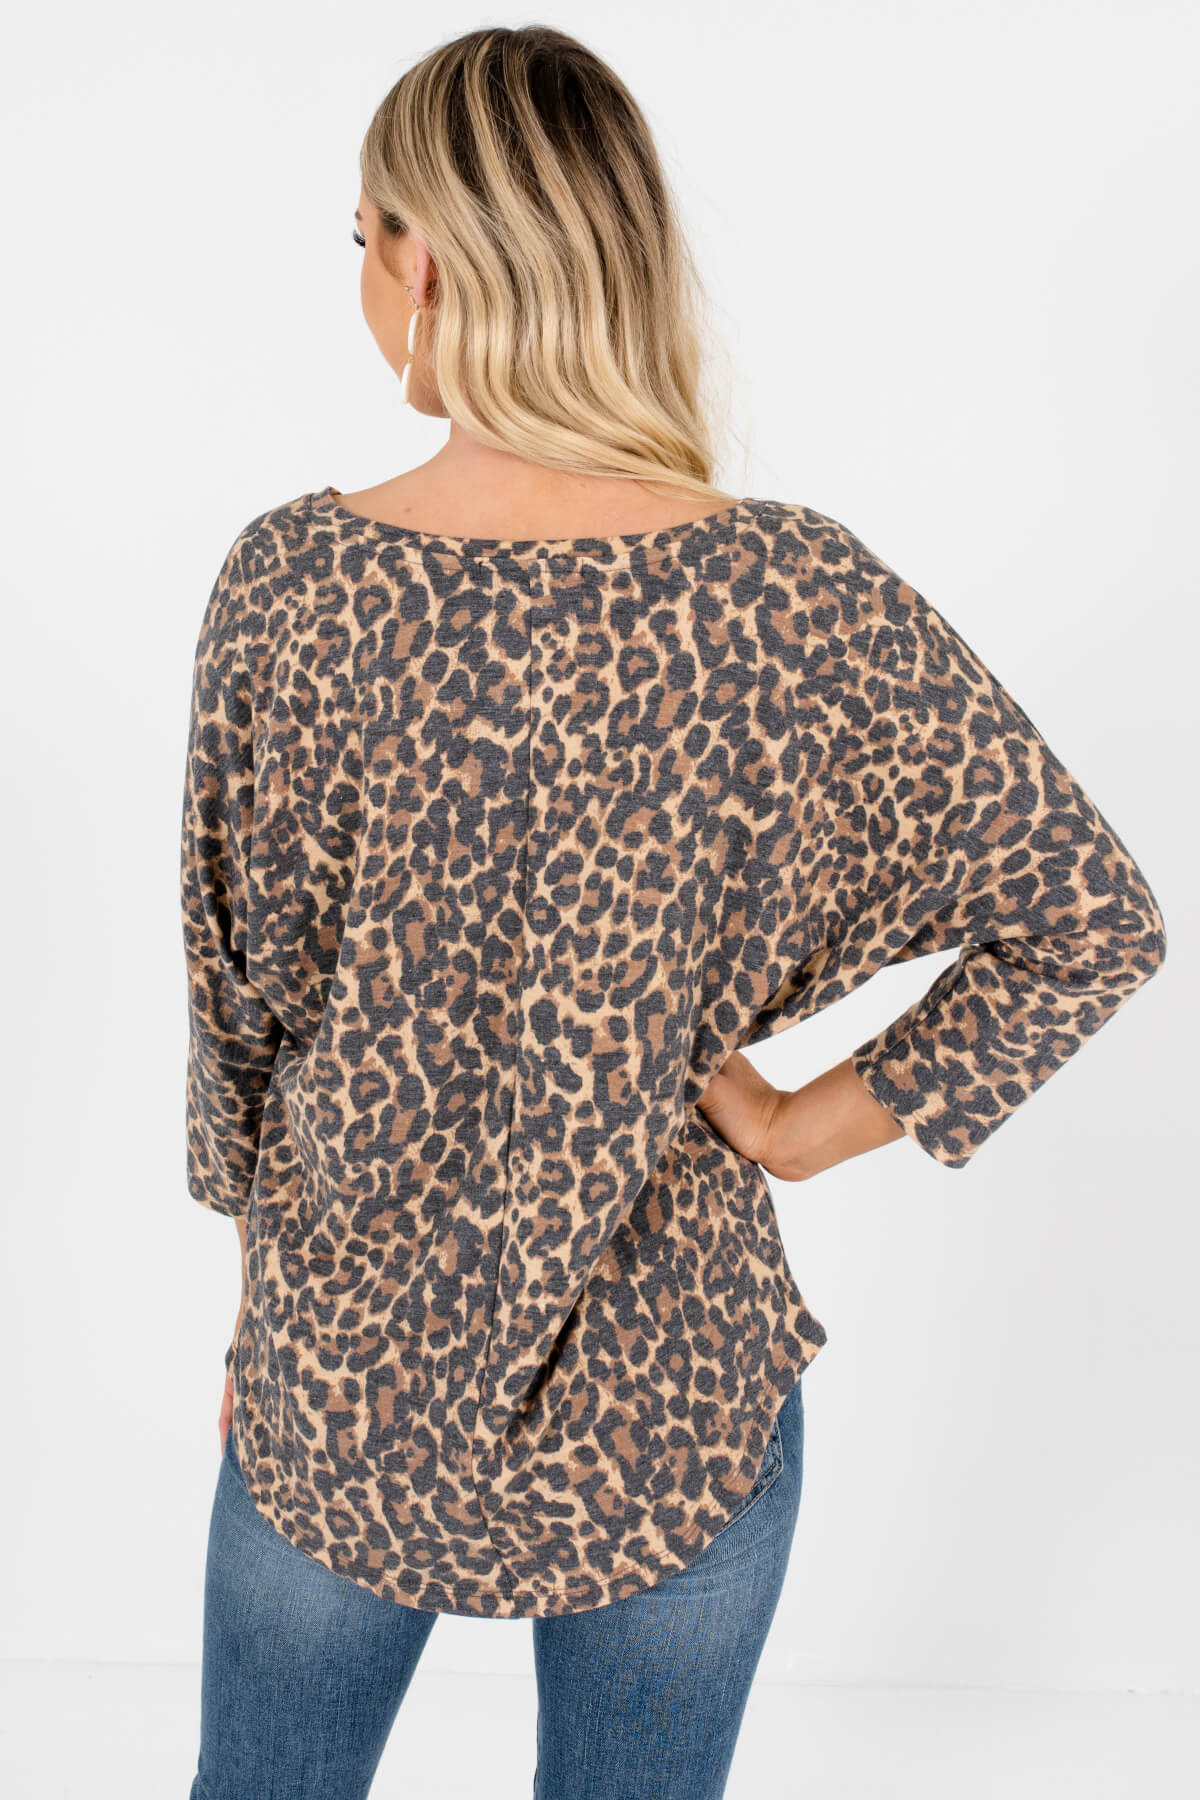 Beige Brown Faded Leopard Print Dolman Sleeve Tops for Women